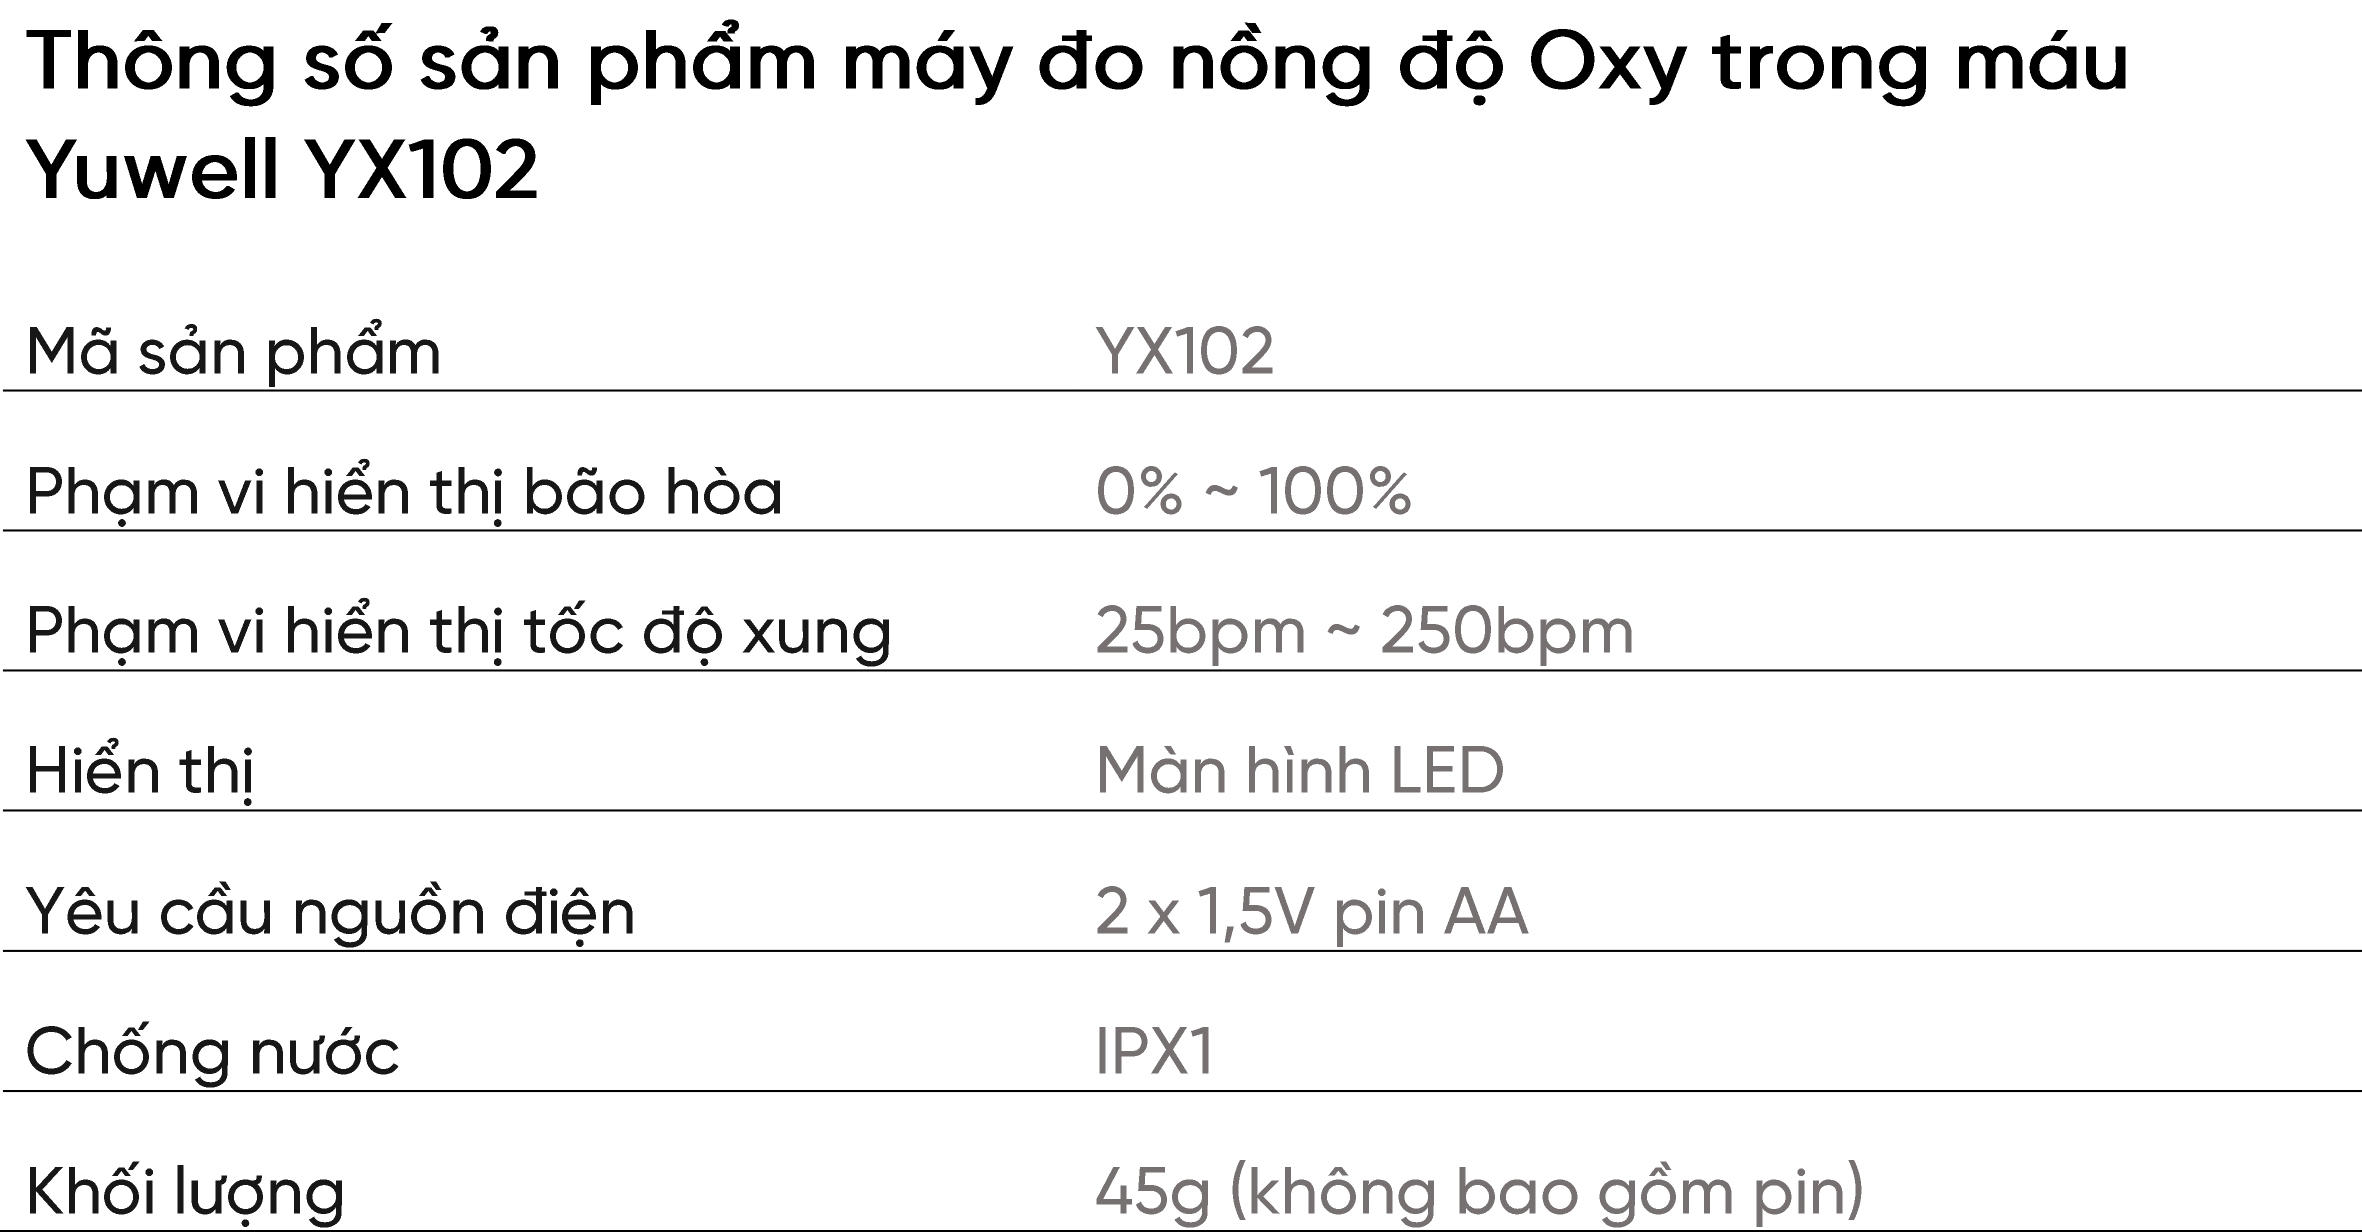 Máy đo nồng độ Oxy trong máu Yuwell YX102